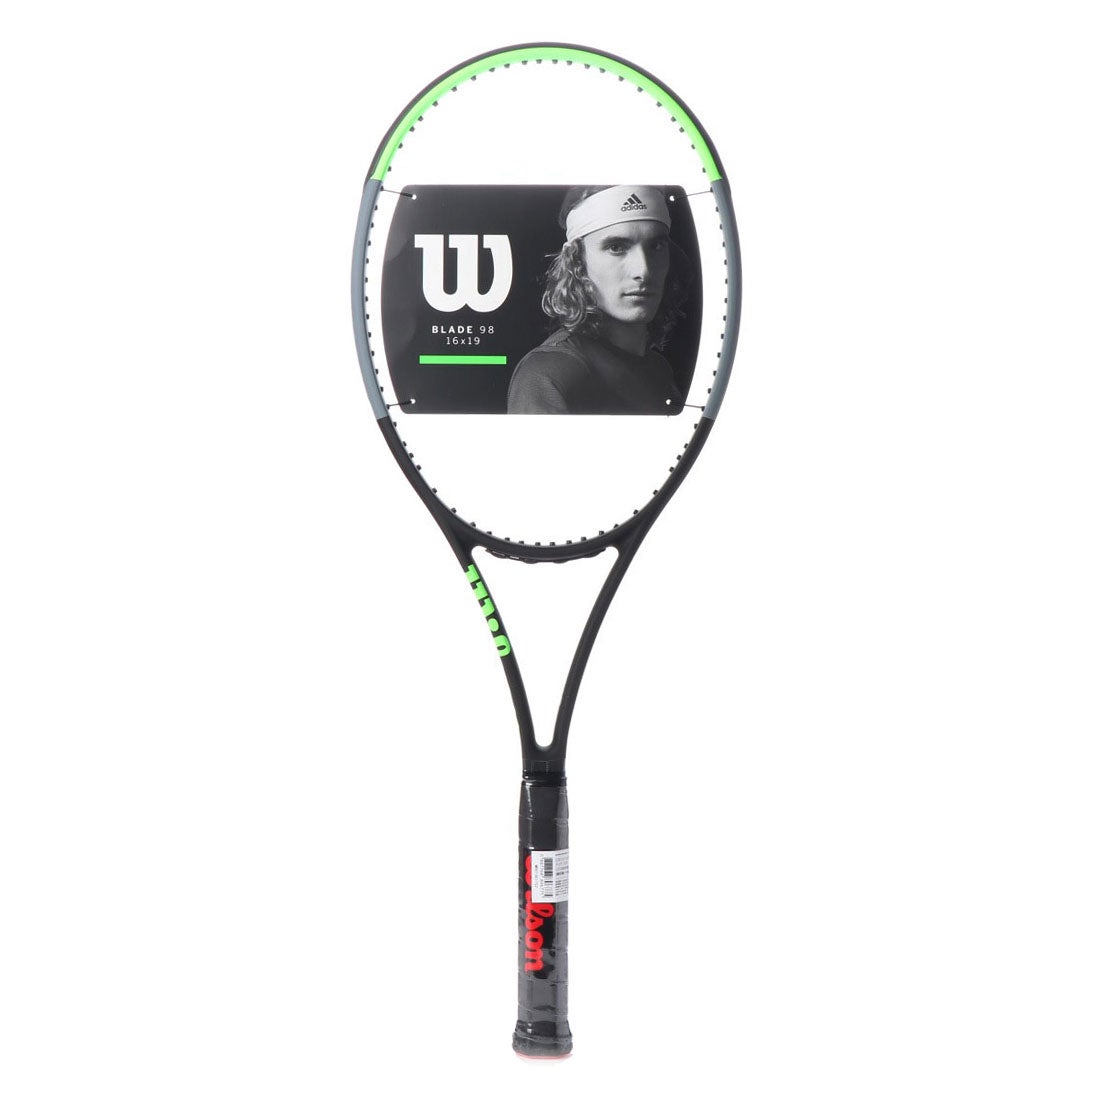 ウィルソン Wilson 硬式テニス 未張りラケット BLADE98 16X19 V7.0 ブレード98 WR013611S2